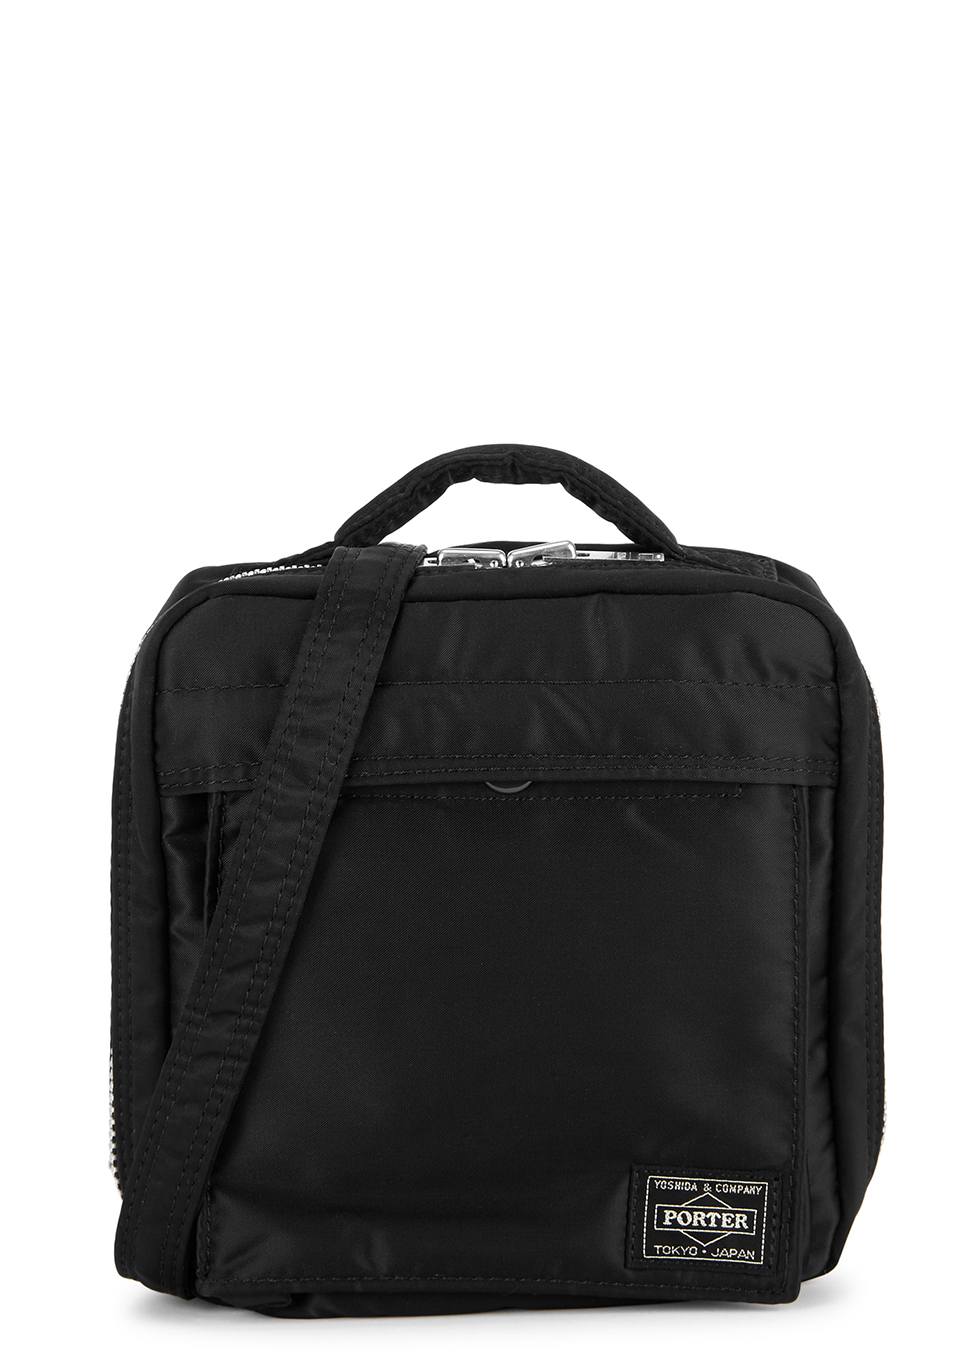 Black padded nylon cross-body bag